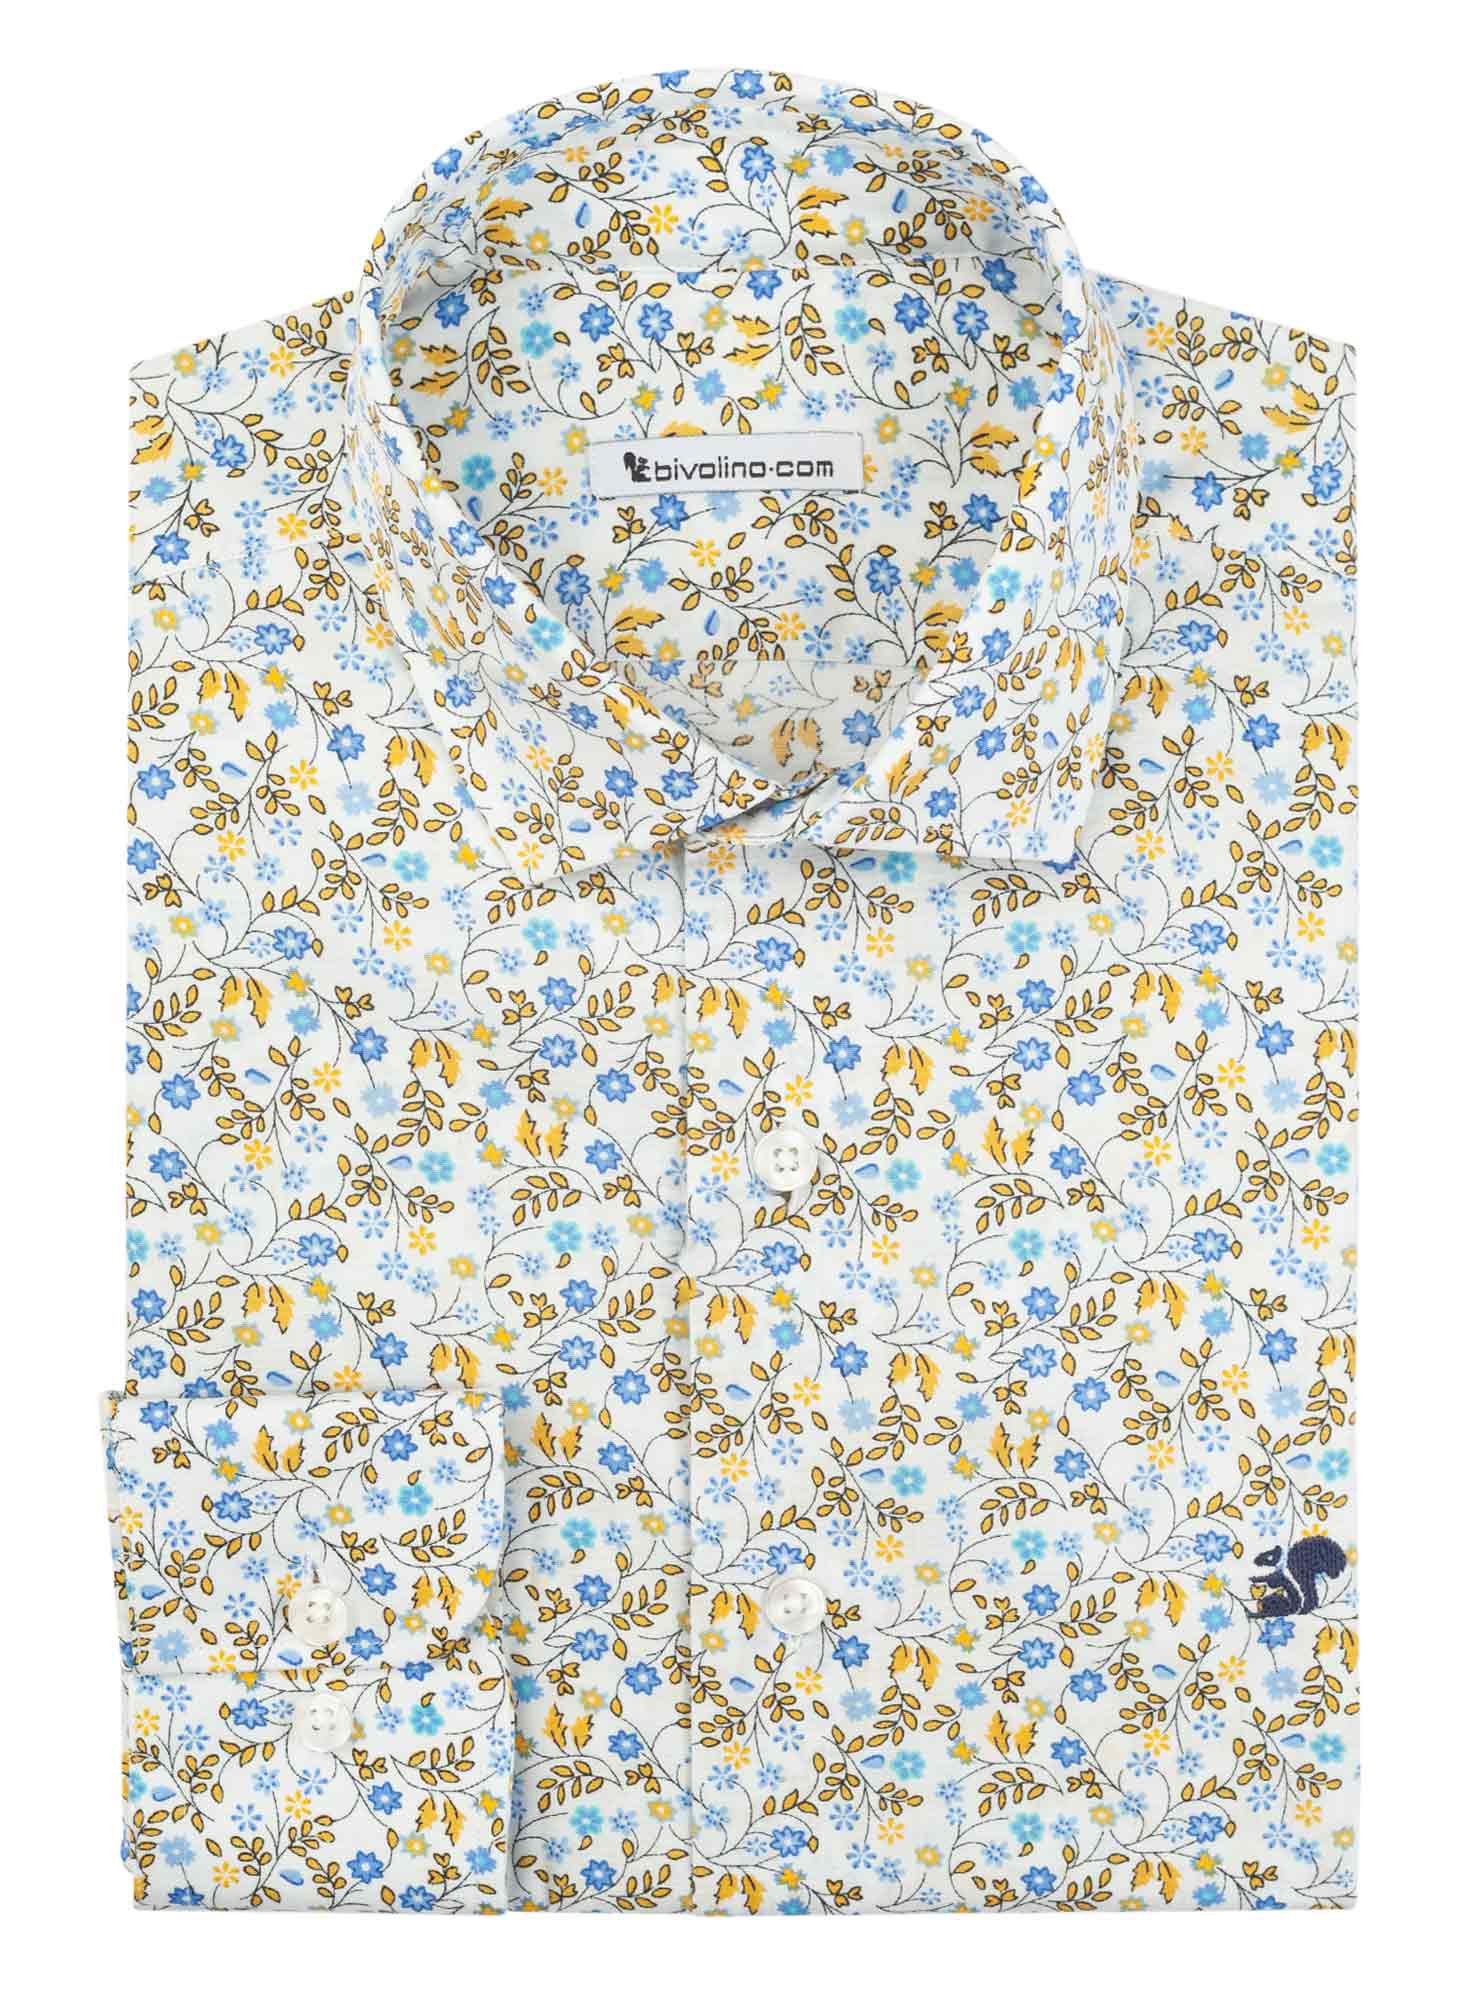 NOVARAA - Popeline stampa fiori camicia da uomo - Tivol 5